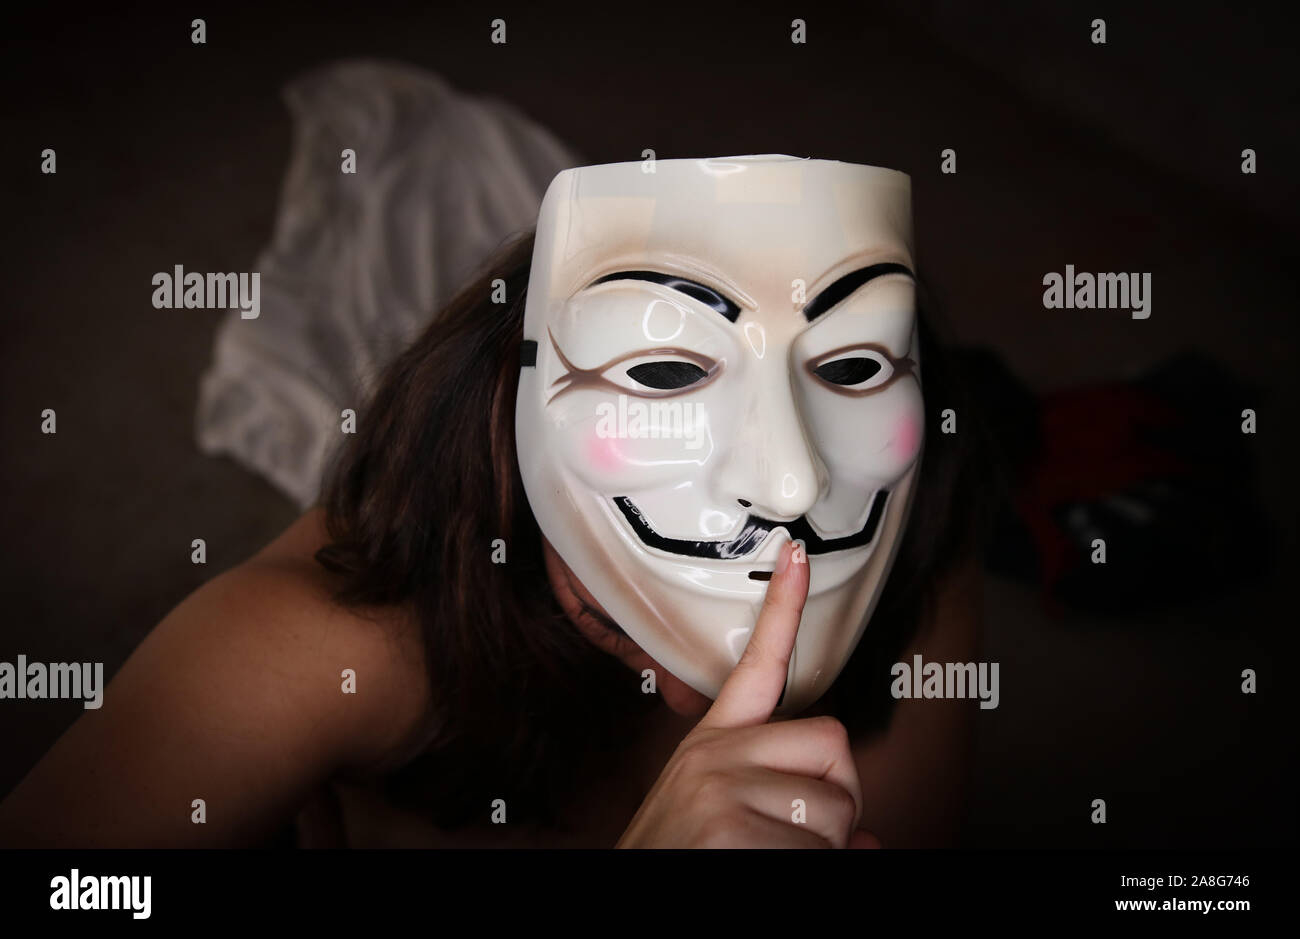 Revolución y reforma. Anti-establecimiento y rebelión. Una niña lleva una máscara de Guy Fawkes y posee un dedo hasta que el silencio del visor. Foto de stock